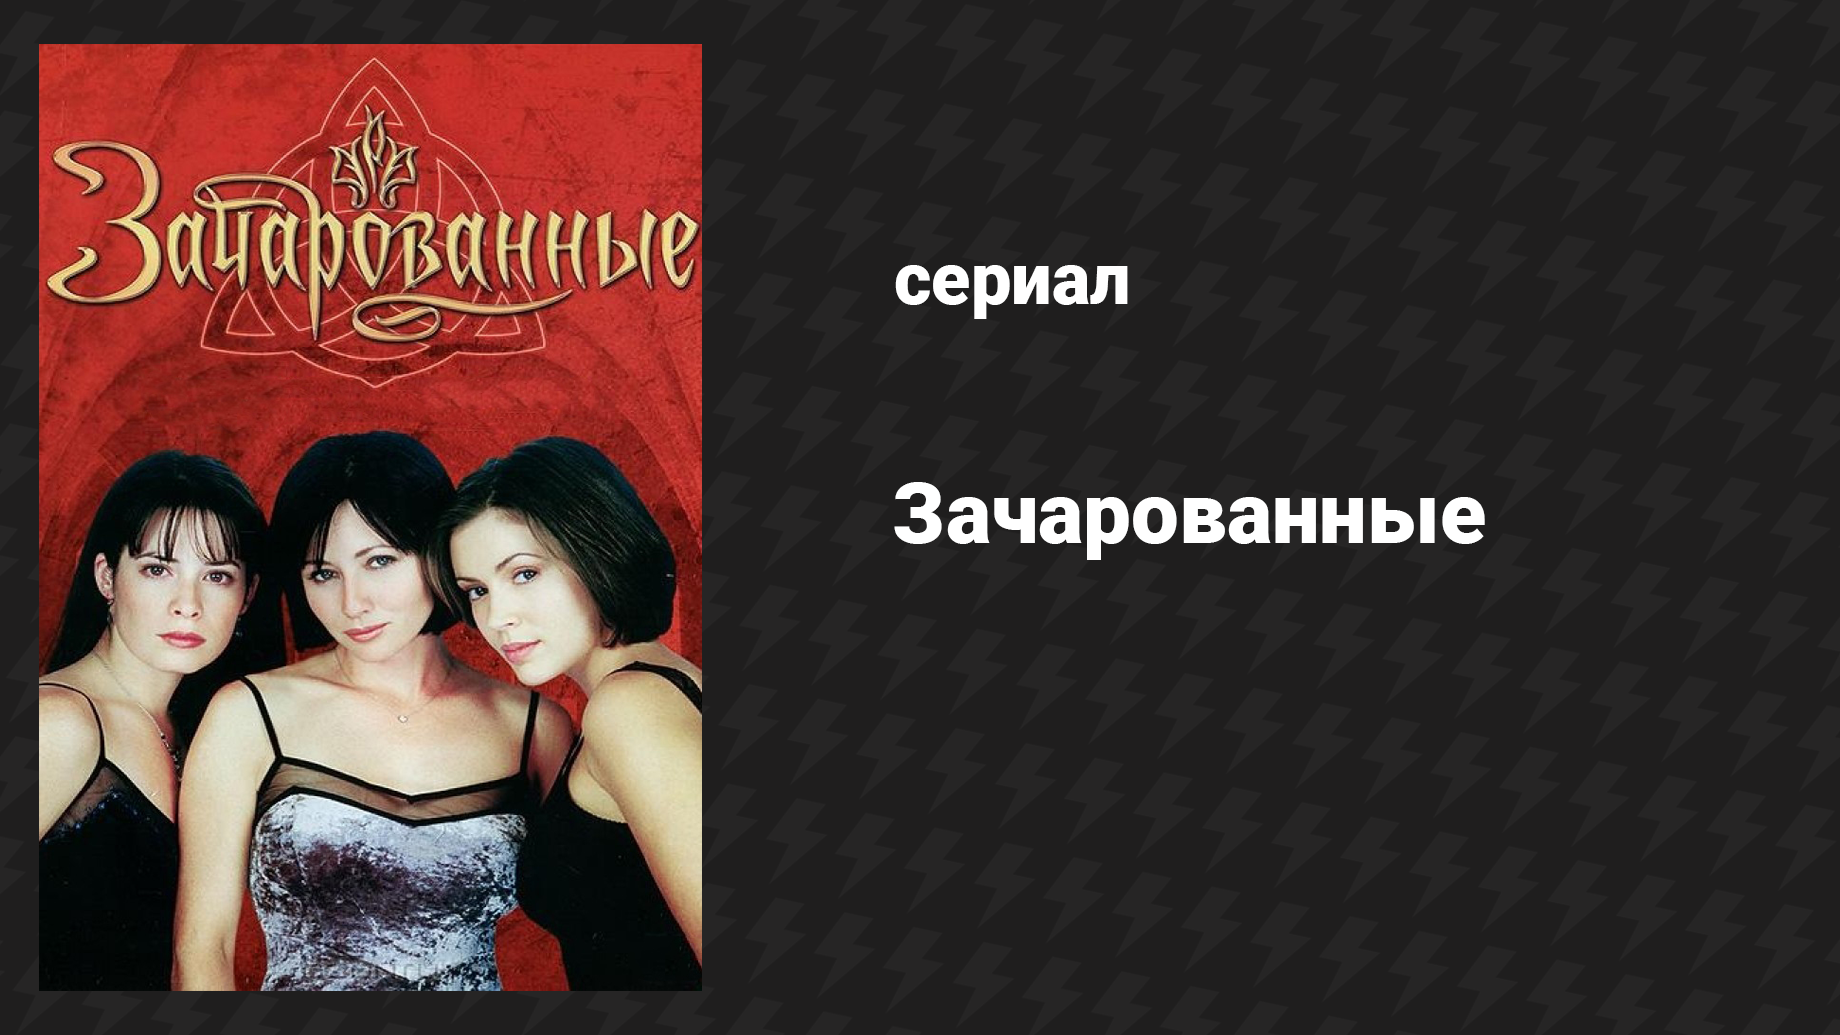 Зачарованные 1 сезон 2 серия «Ветхая молодость» (сериал, 1999)